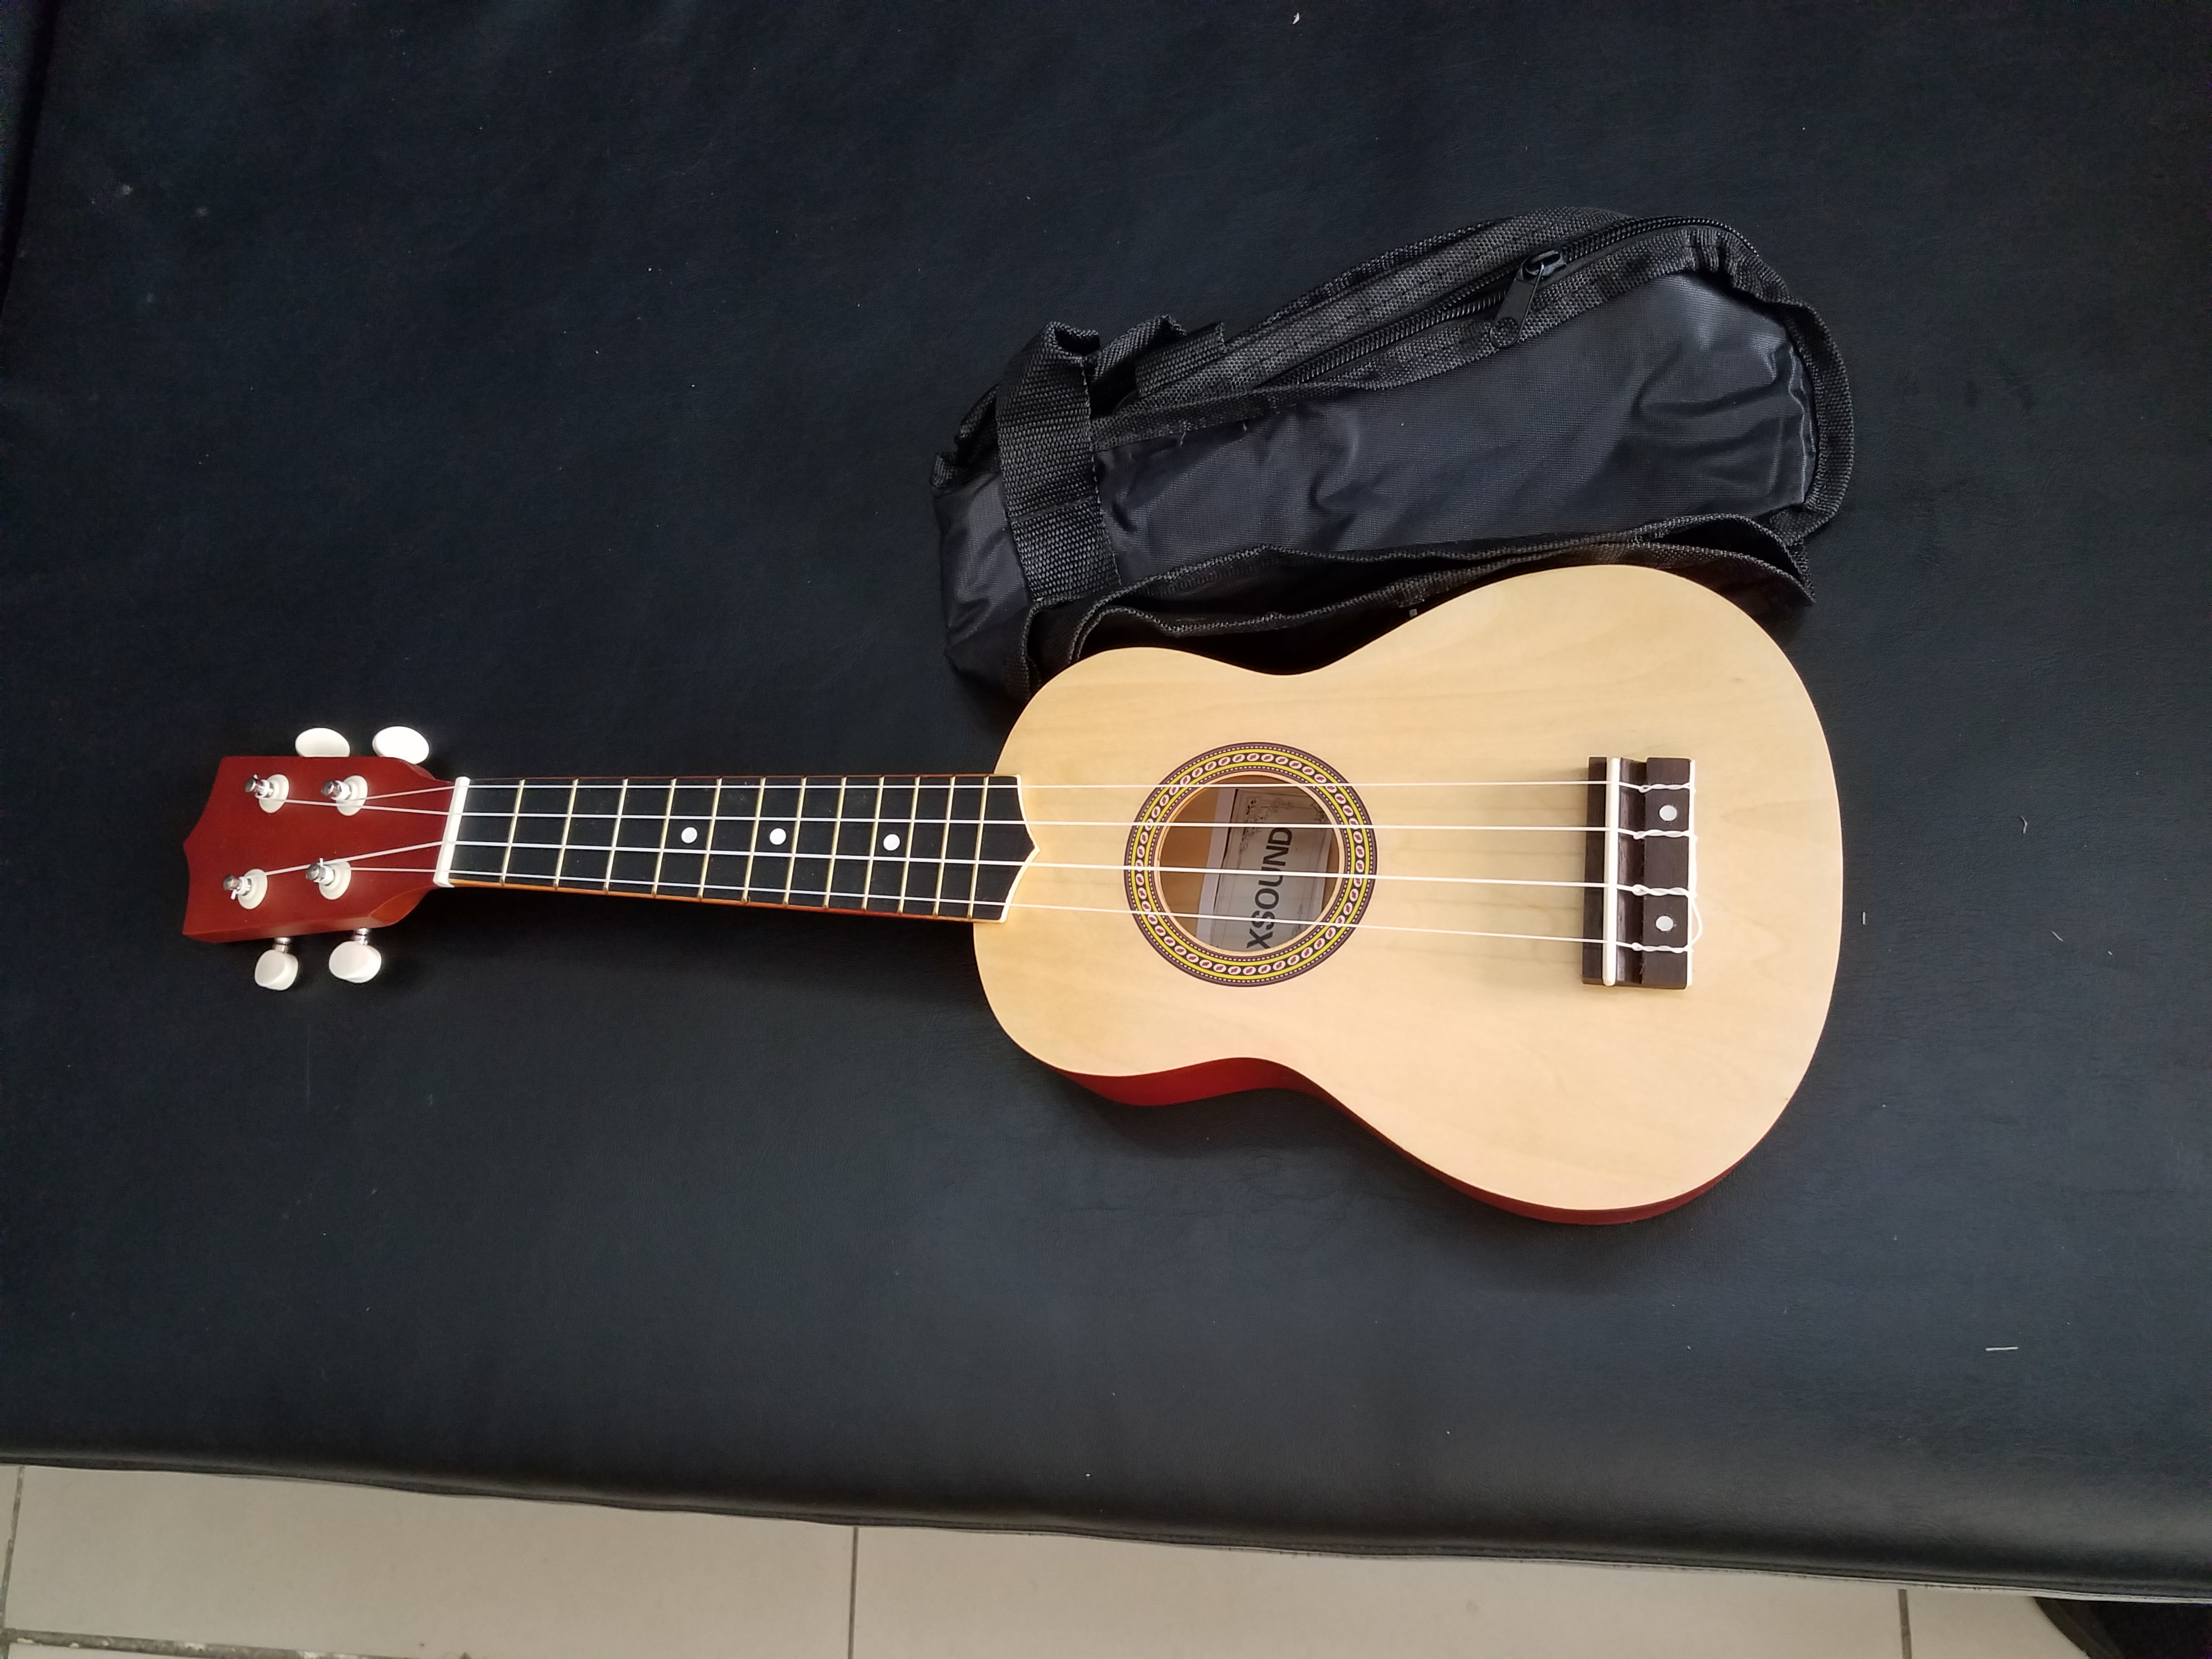 instrumentos musicales - guitarra Ukulele (soprano) marca Xsound, con estuche incluido.